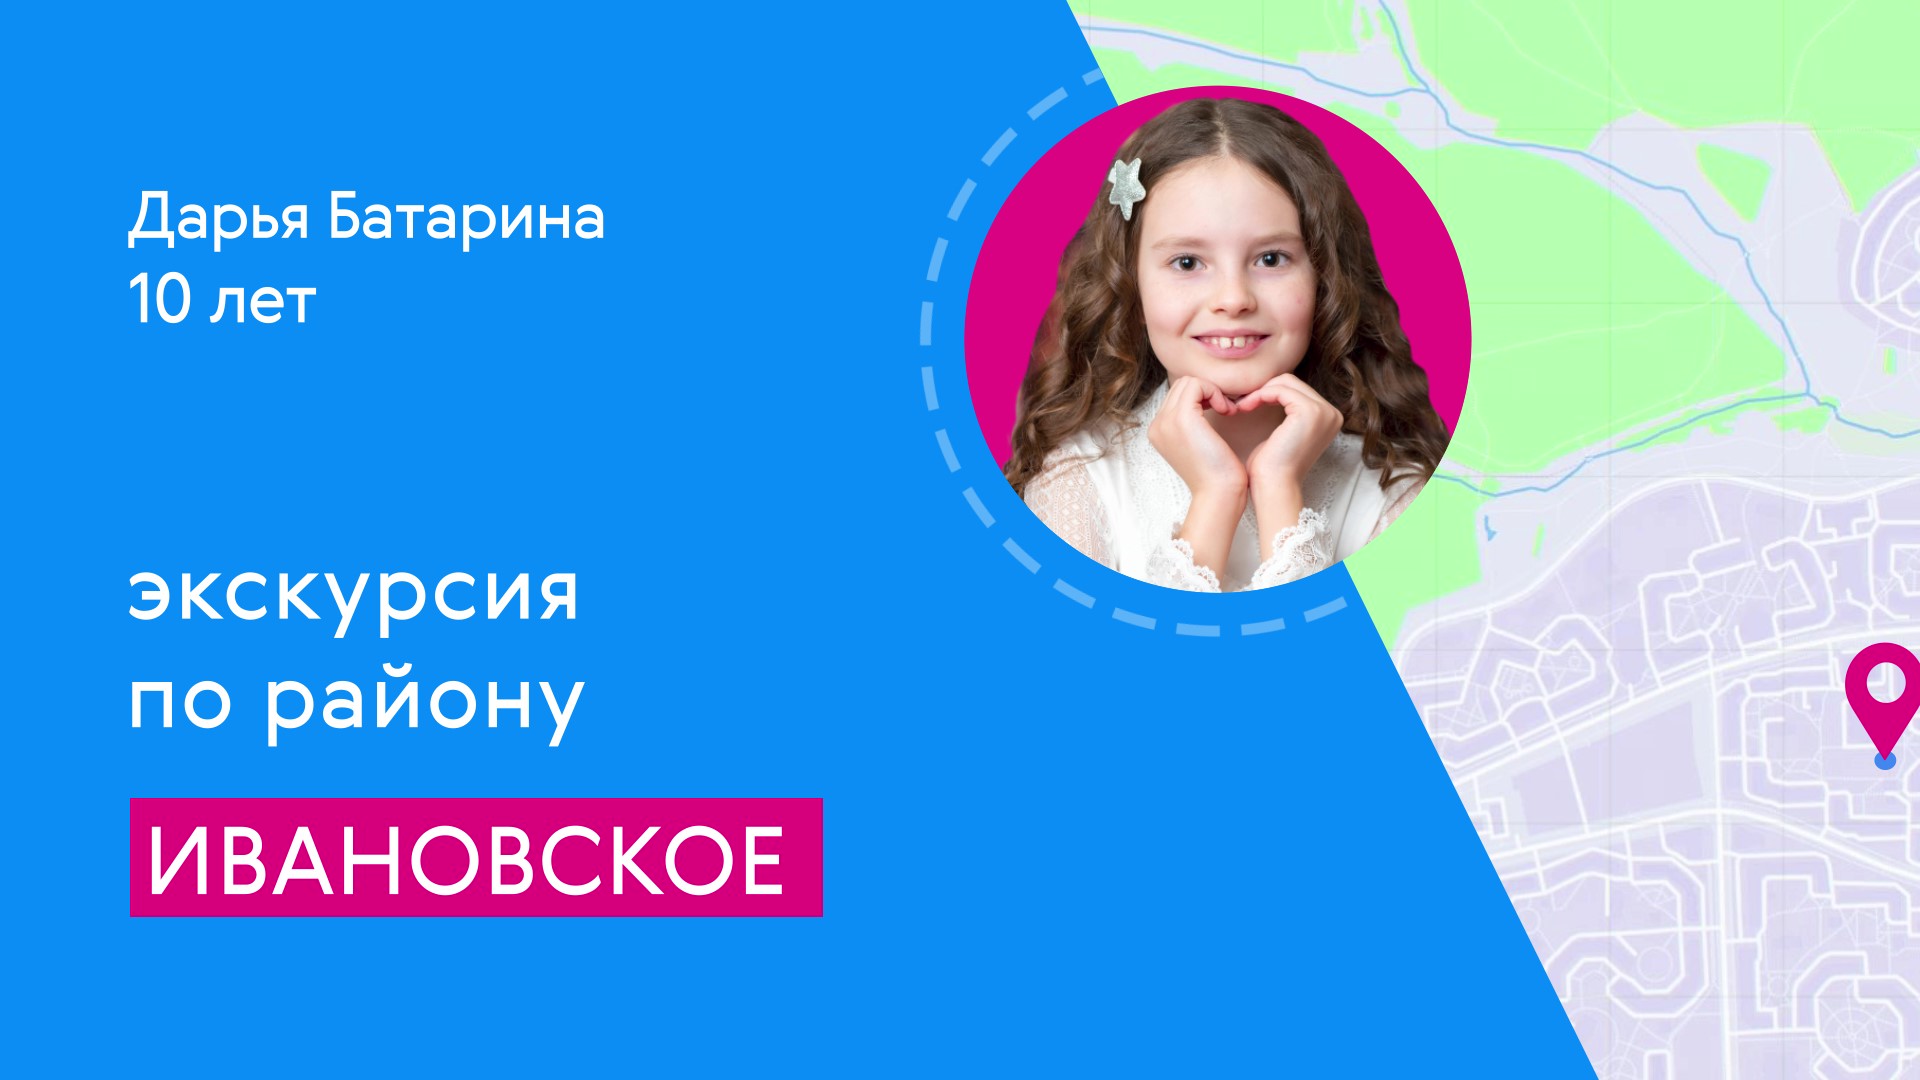 Районы Москвы глазами детей: Ивановское